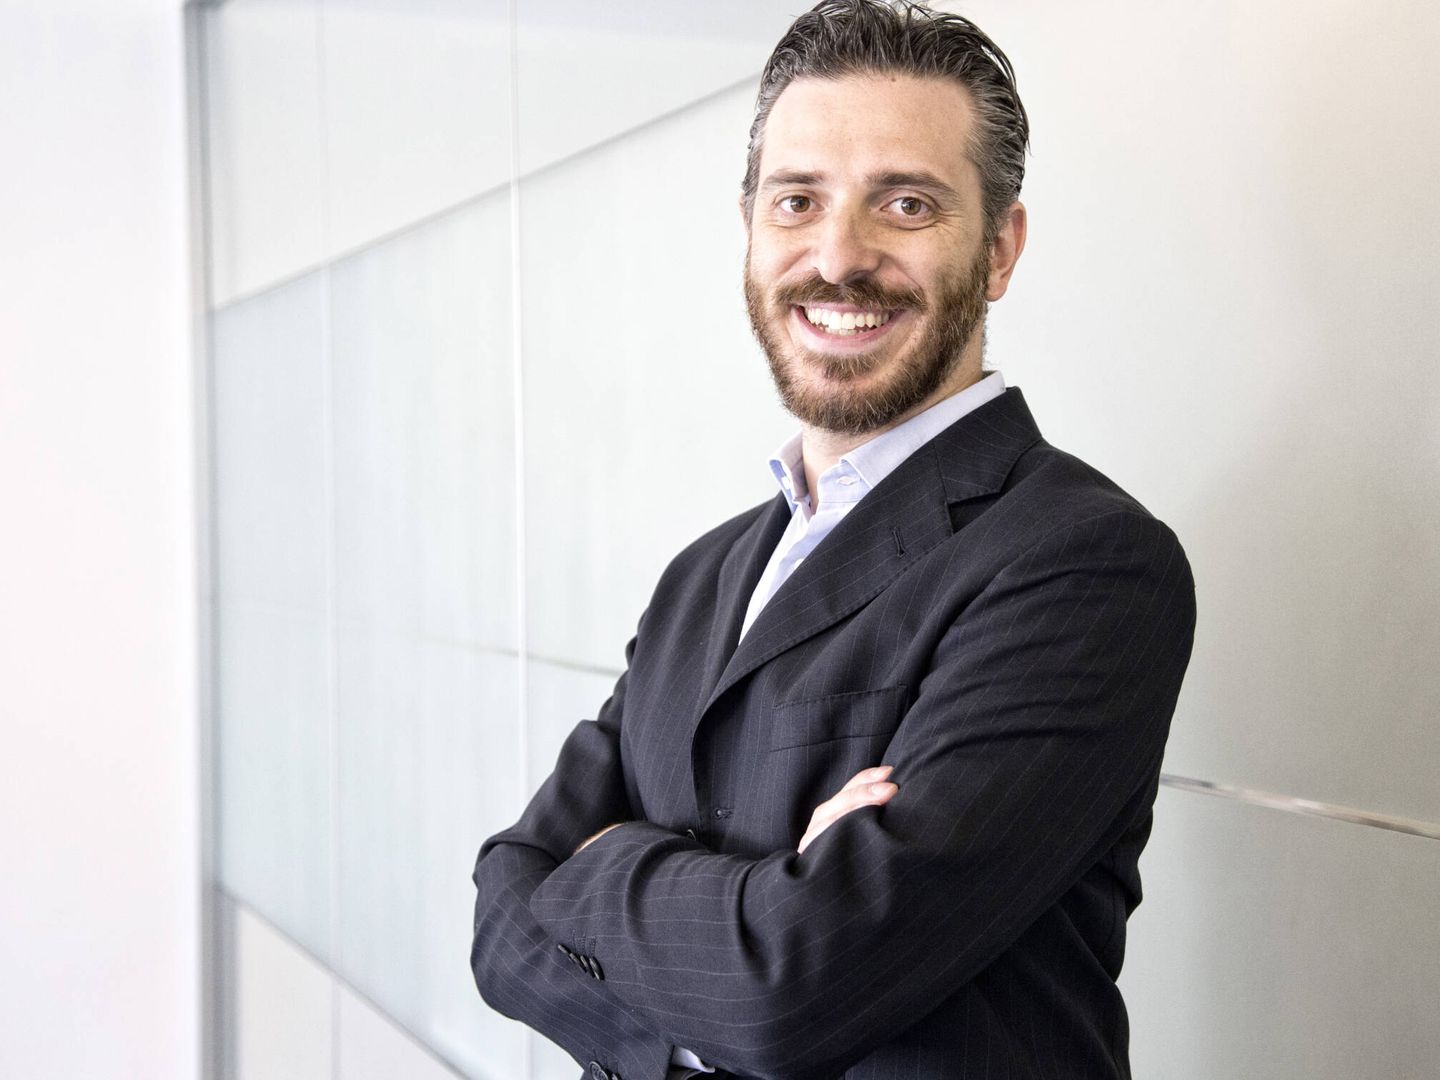 Marco Marlia, fundador y CEO de MotorK, es uno de los mayores expertos en marketing digital.